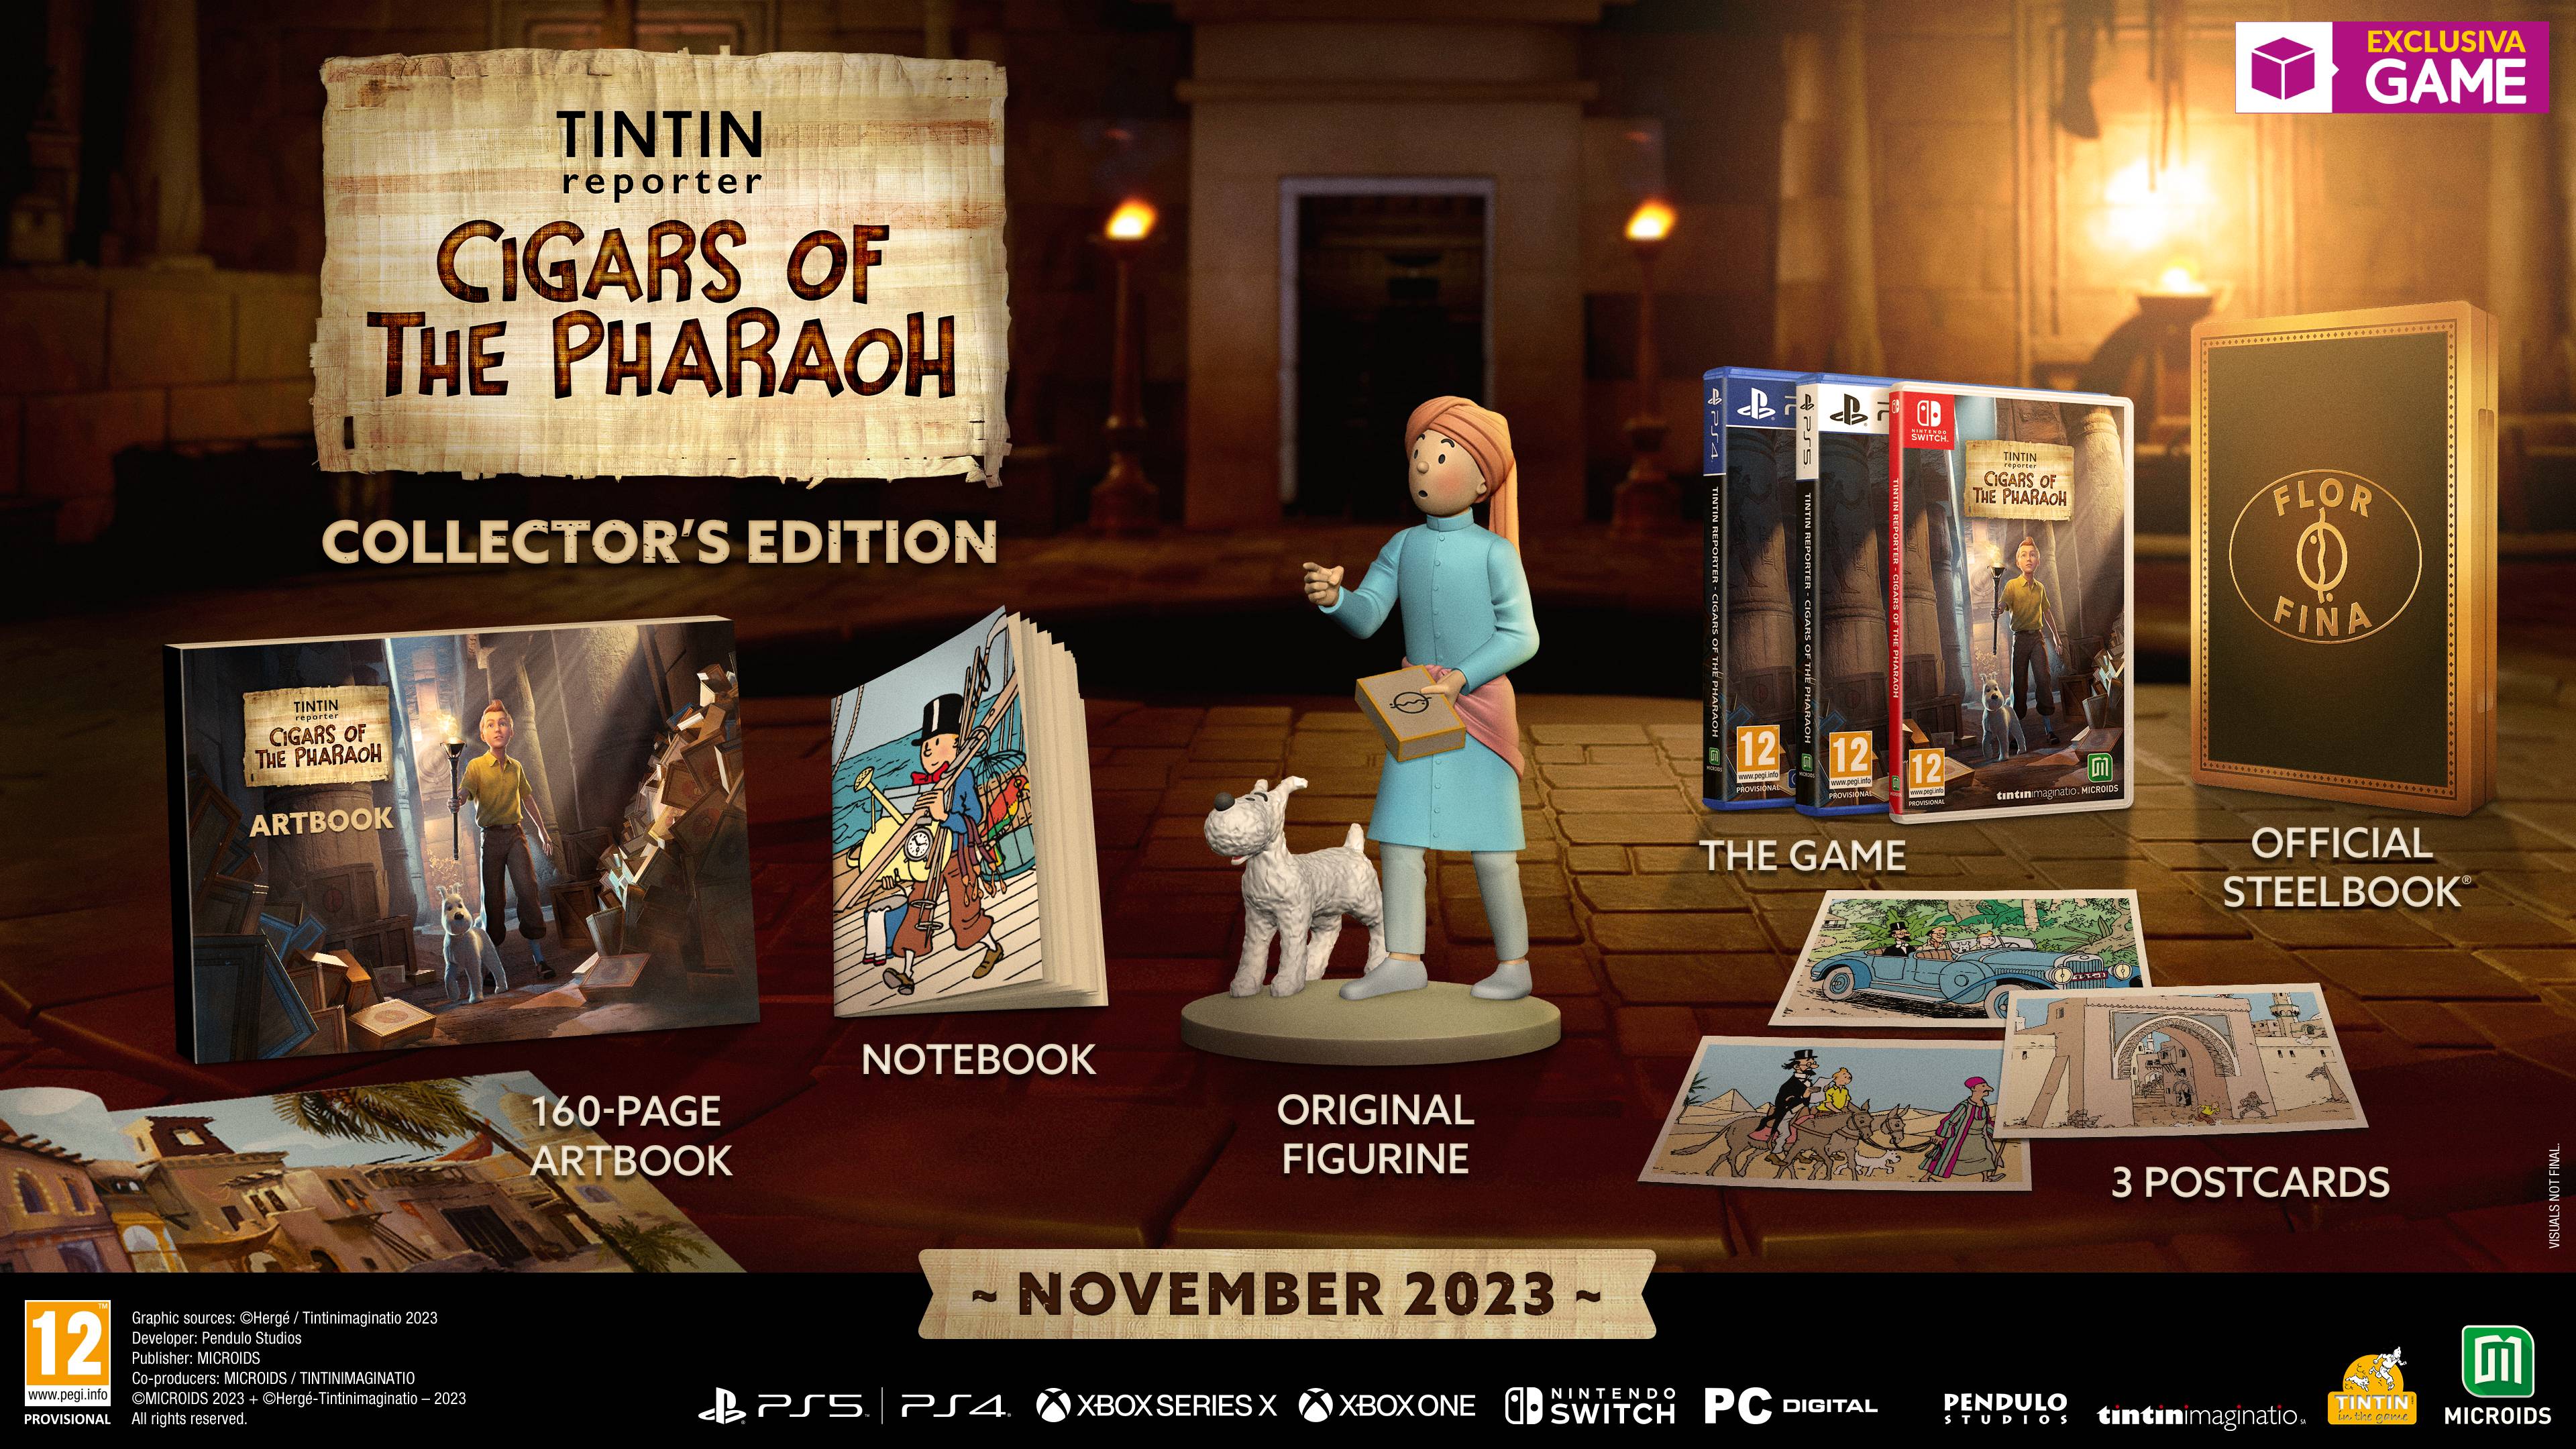 Reservar Tintin Reporter: Los Cigarros del Faraón Edición Coleccionista en exclusiva en GAME | Hobby Consolas